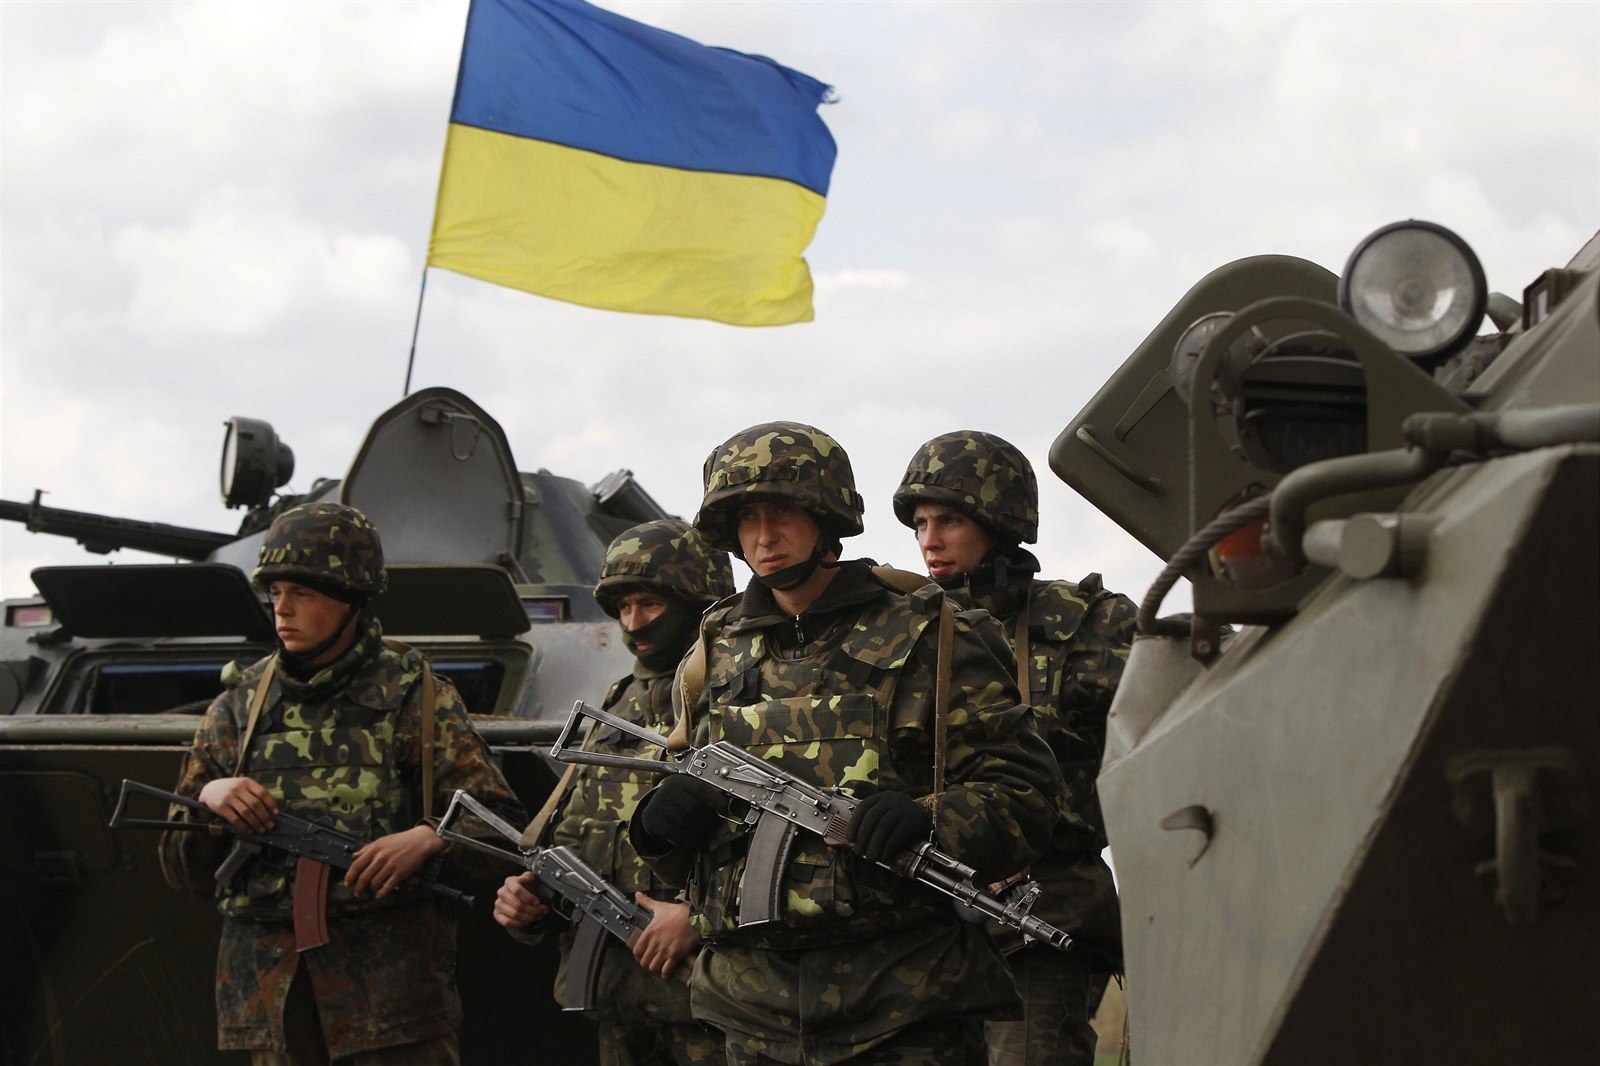 Обстановка на Донбассе: пророссийские наемники 10 раз ответным огнем получили "по зубам" от сил АТО, - у защитников Украины без потерь